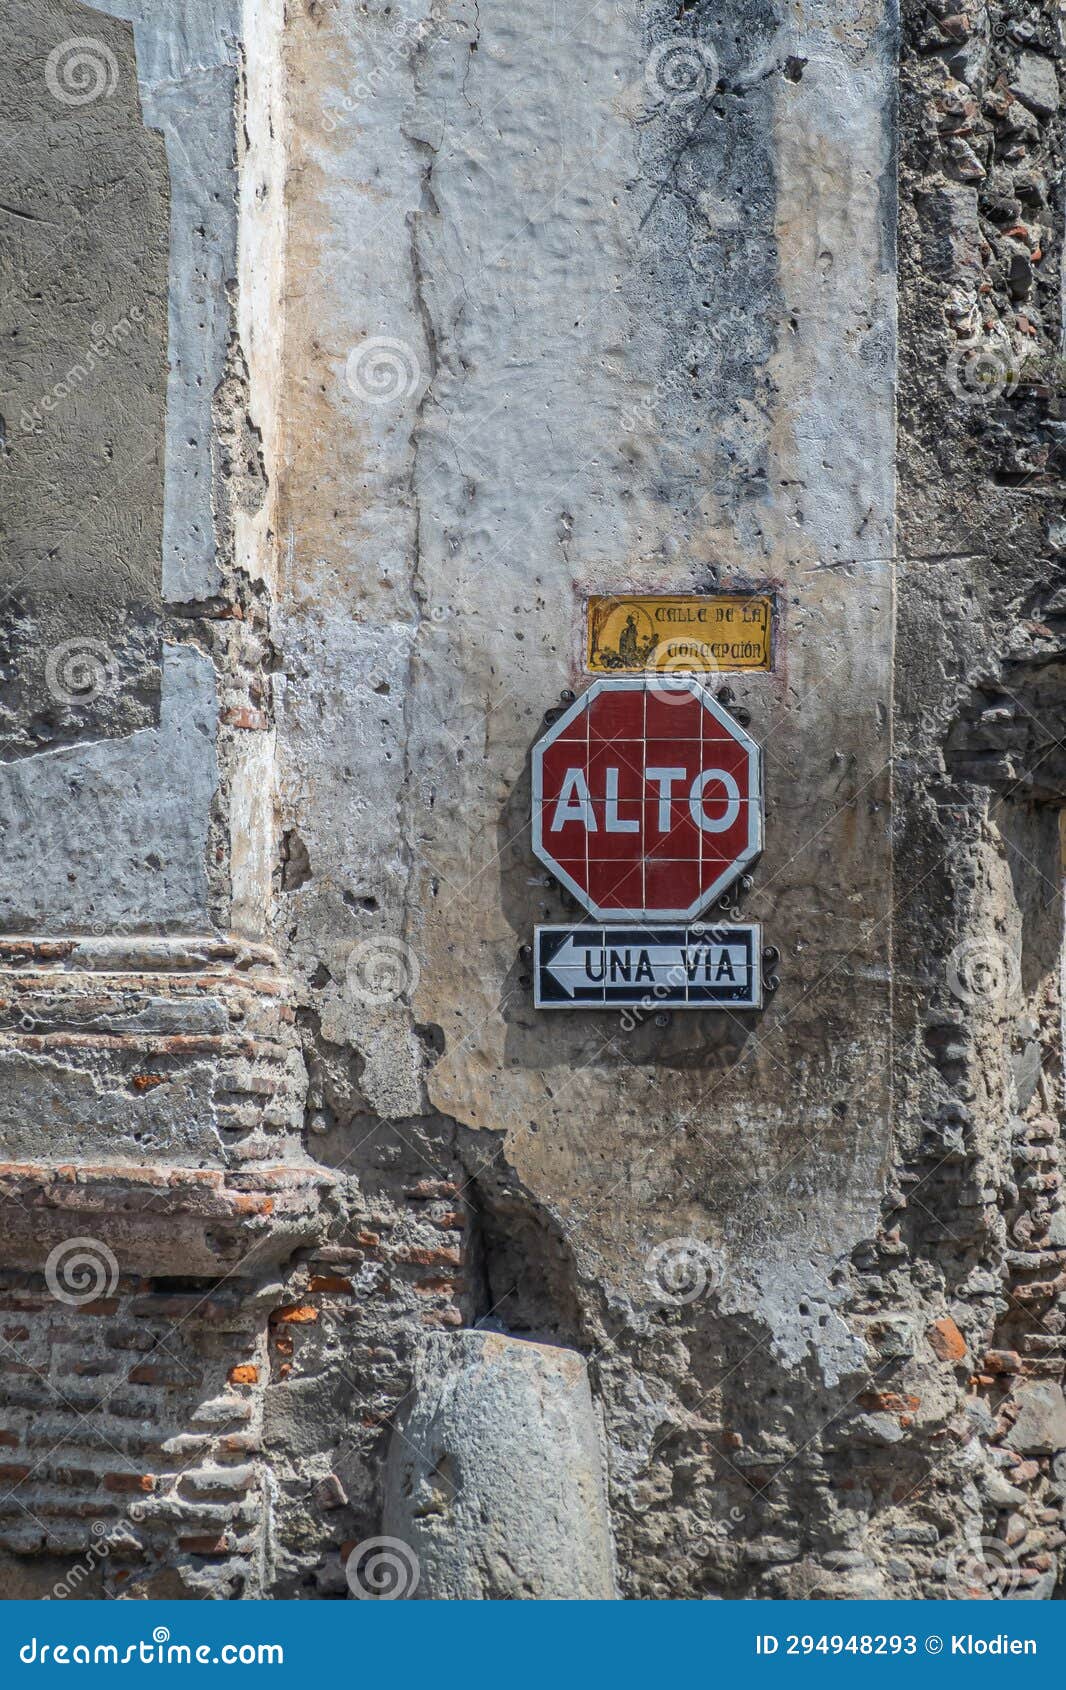 stop traffic sign in la antigua, guatemala